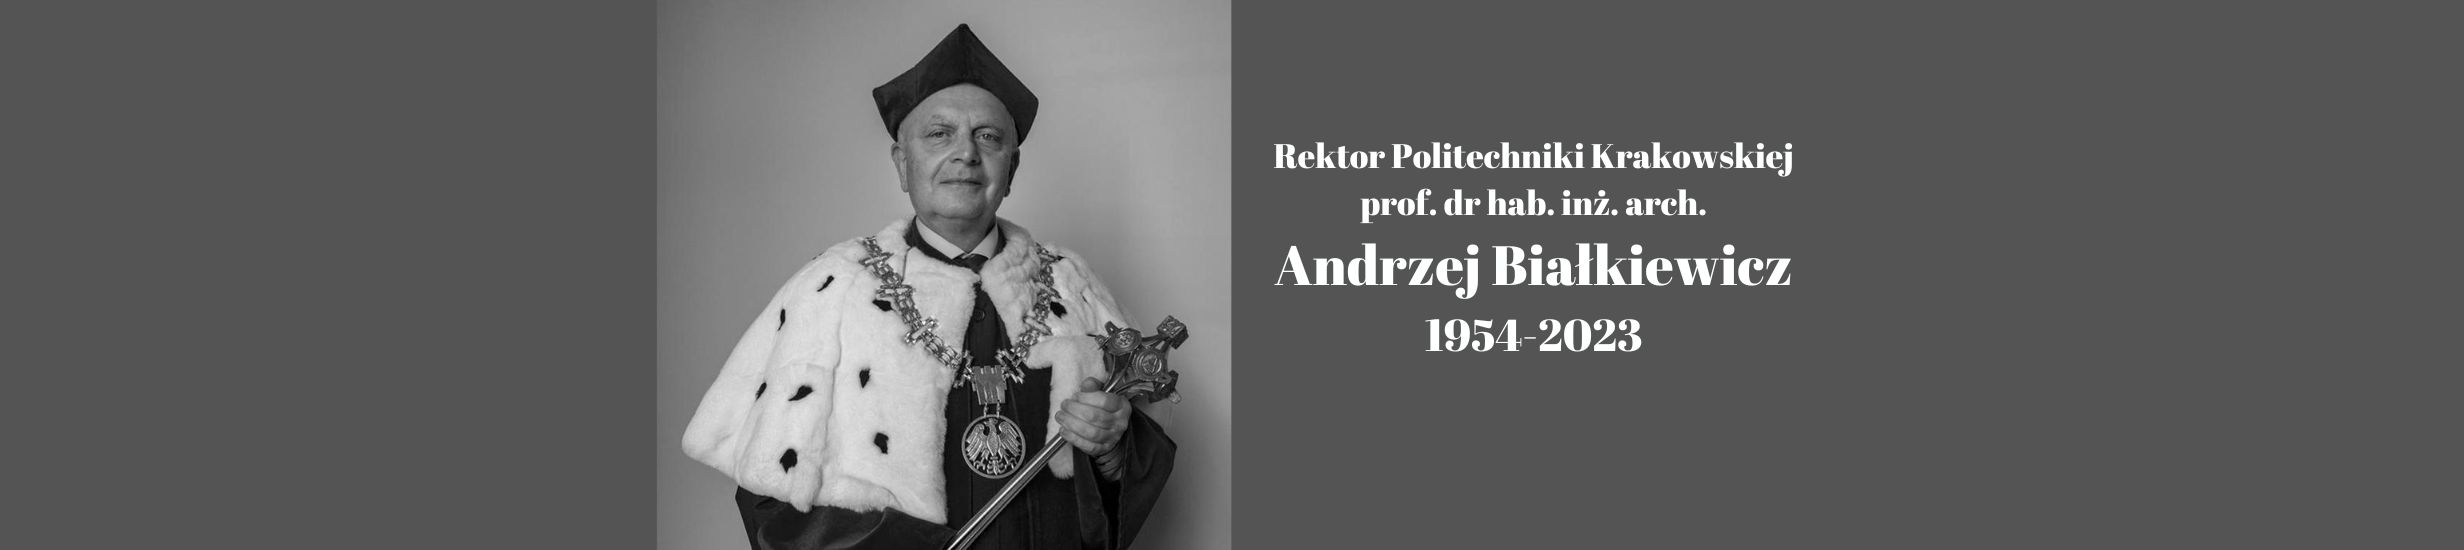 Zmarł prof. Andrzej Białkiewicz, Rektor Politechniki Krakowskiej